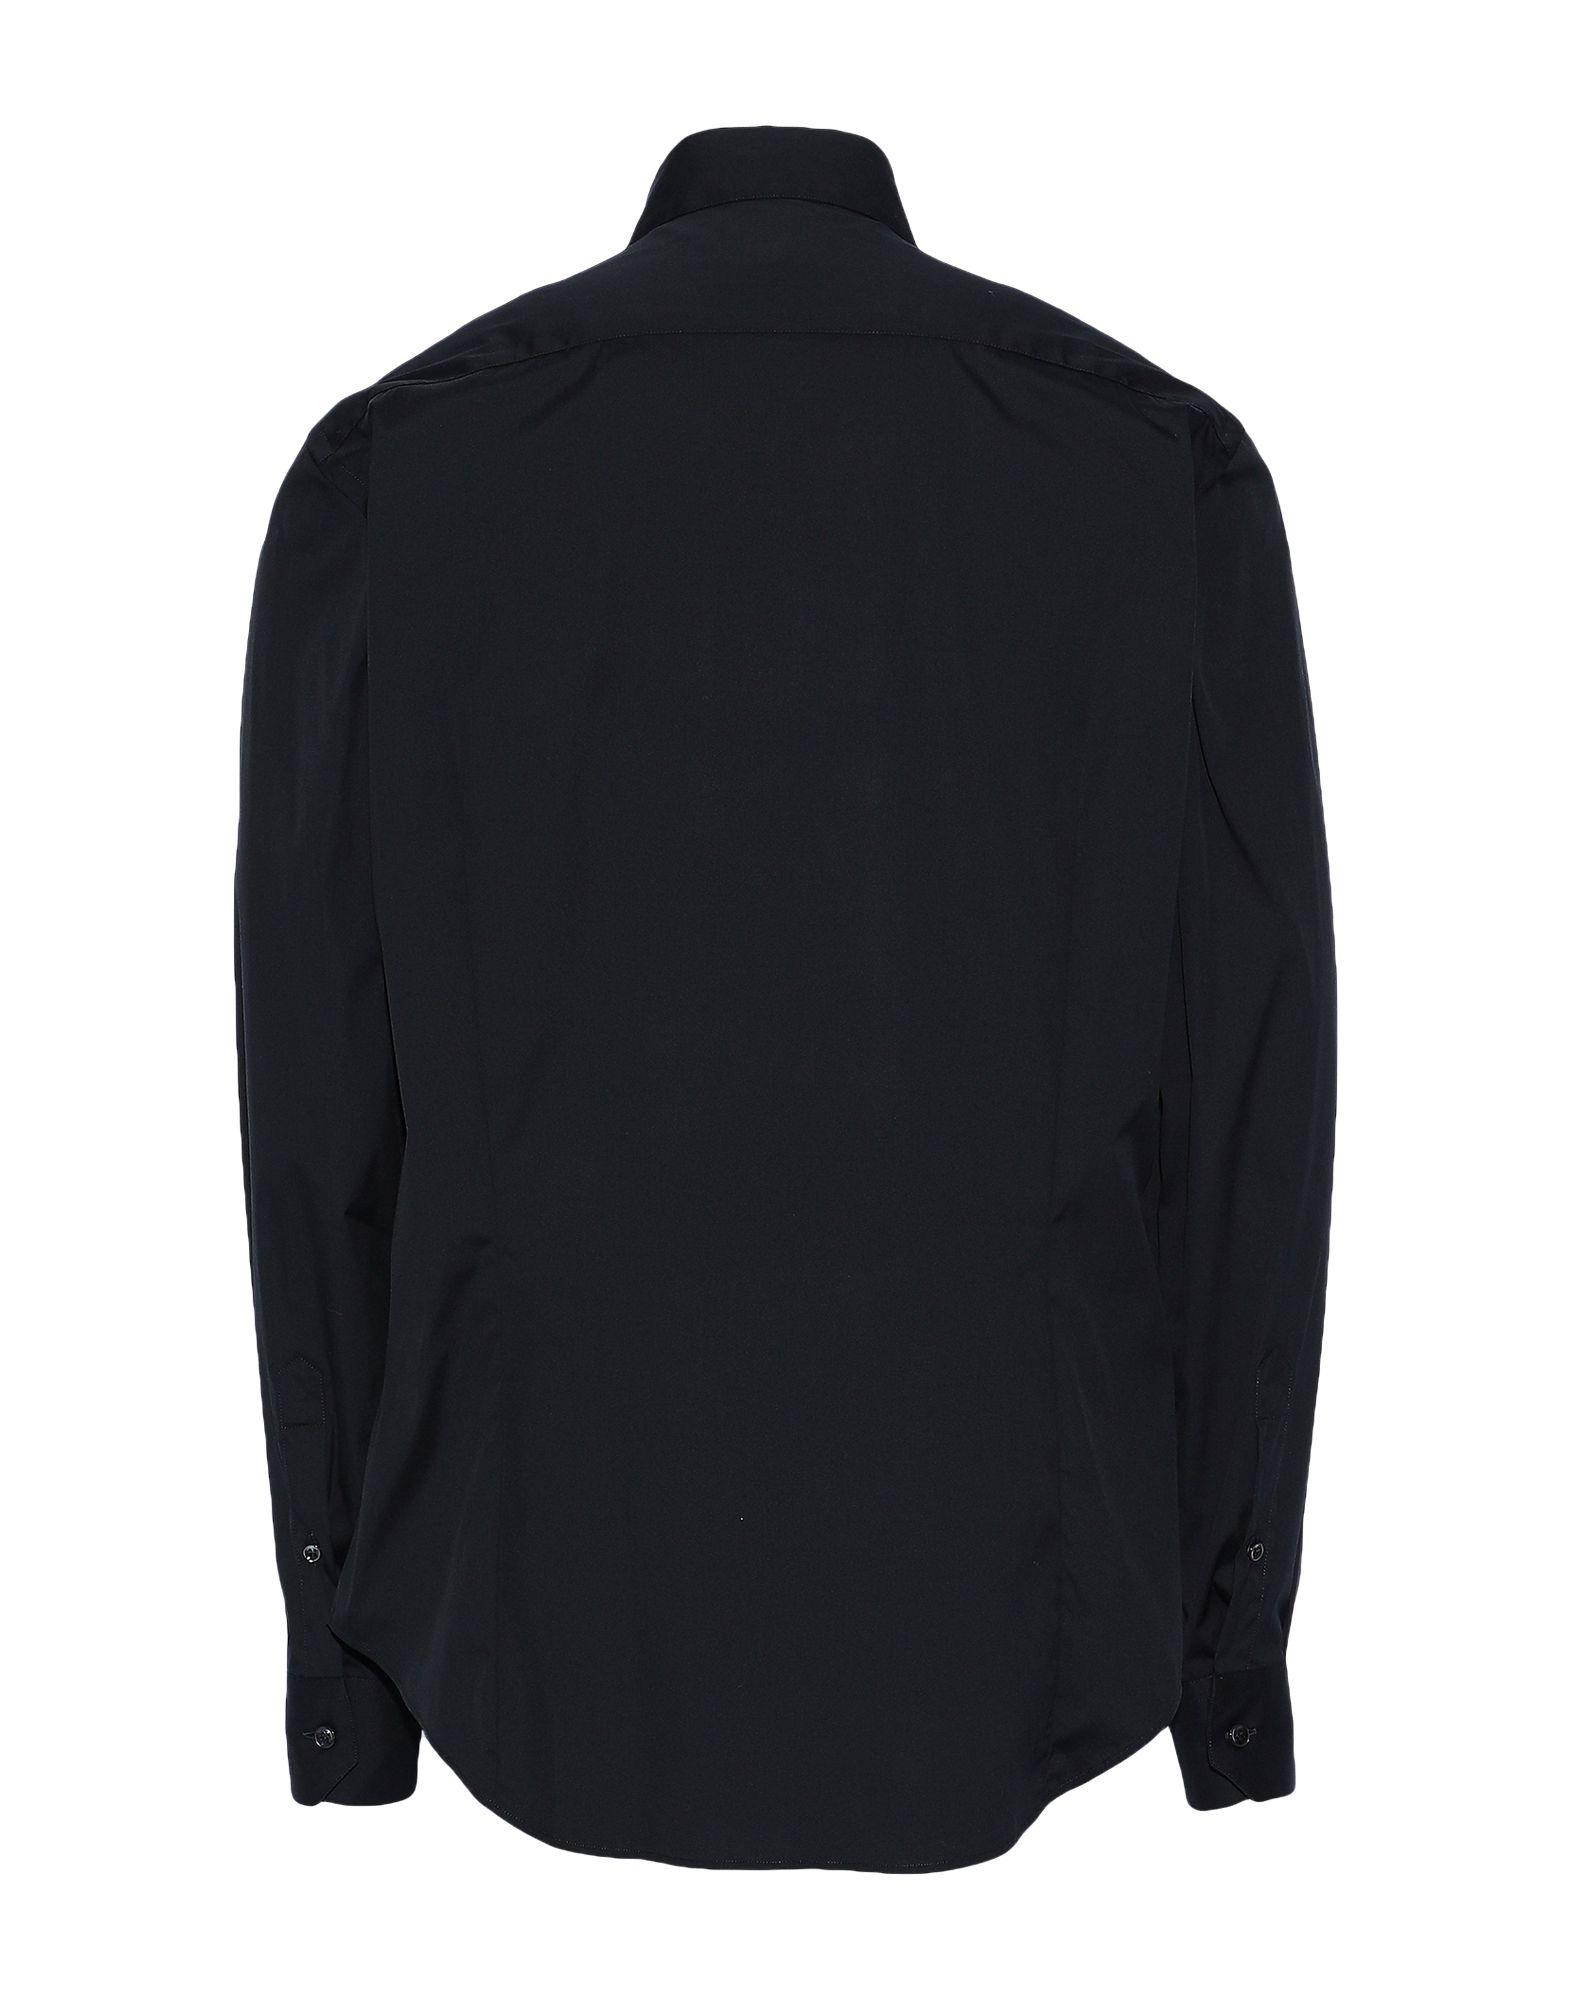 Giorgio Armani Cotton Shirt in Black for Men - Lyst